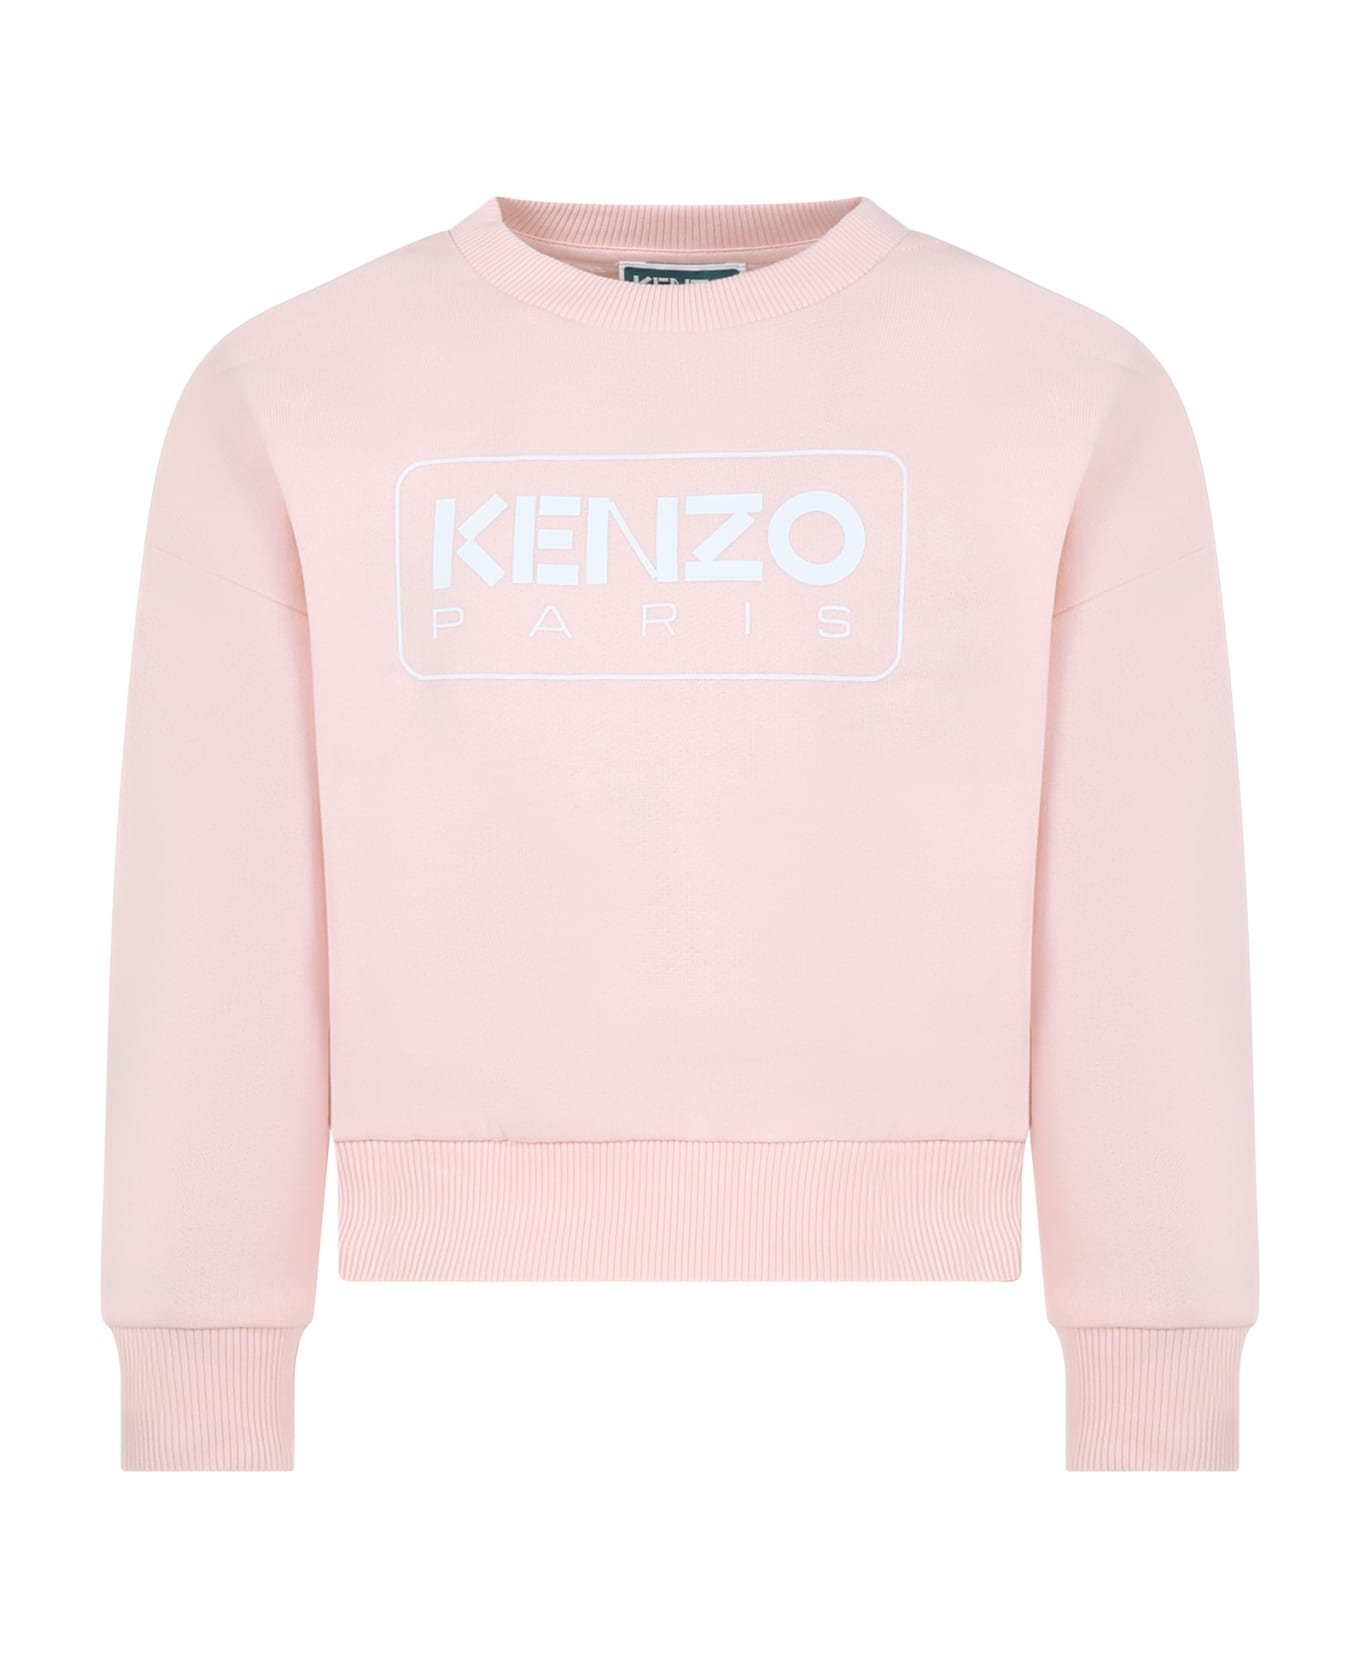 Kenzo Kids Pink Sweatshirt For Girl With Logo - PINK